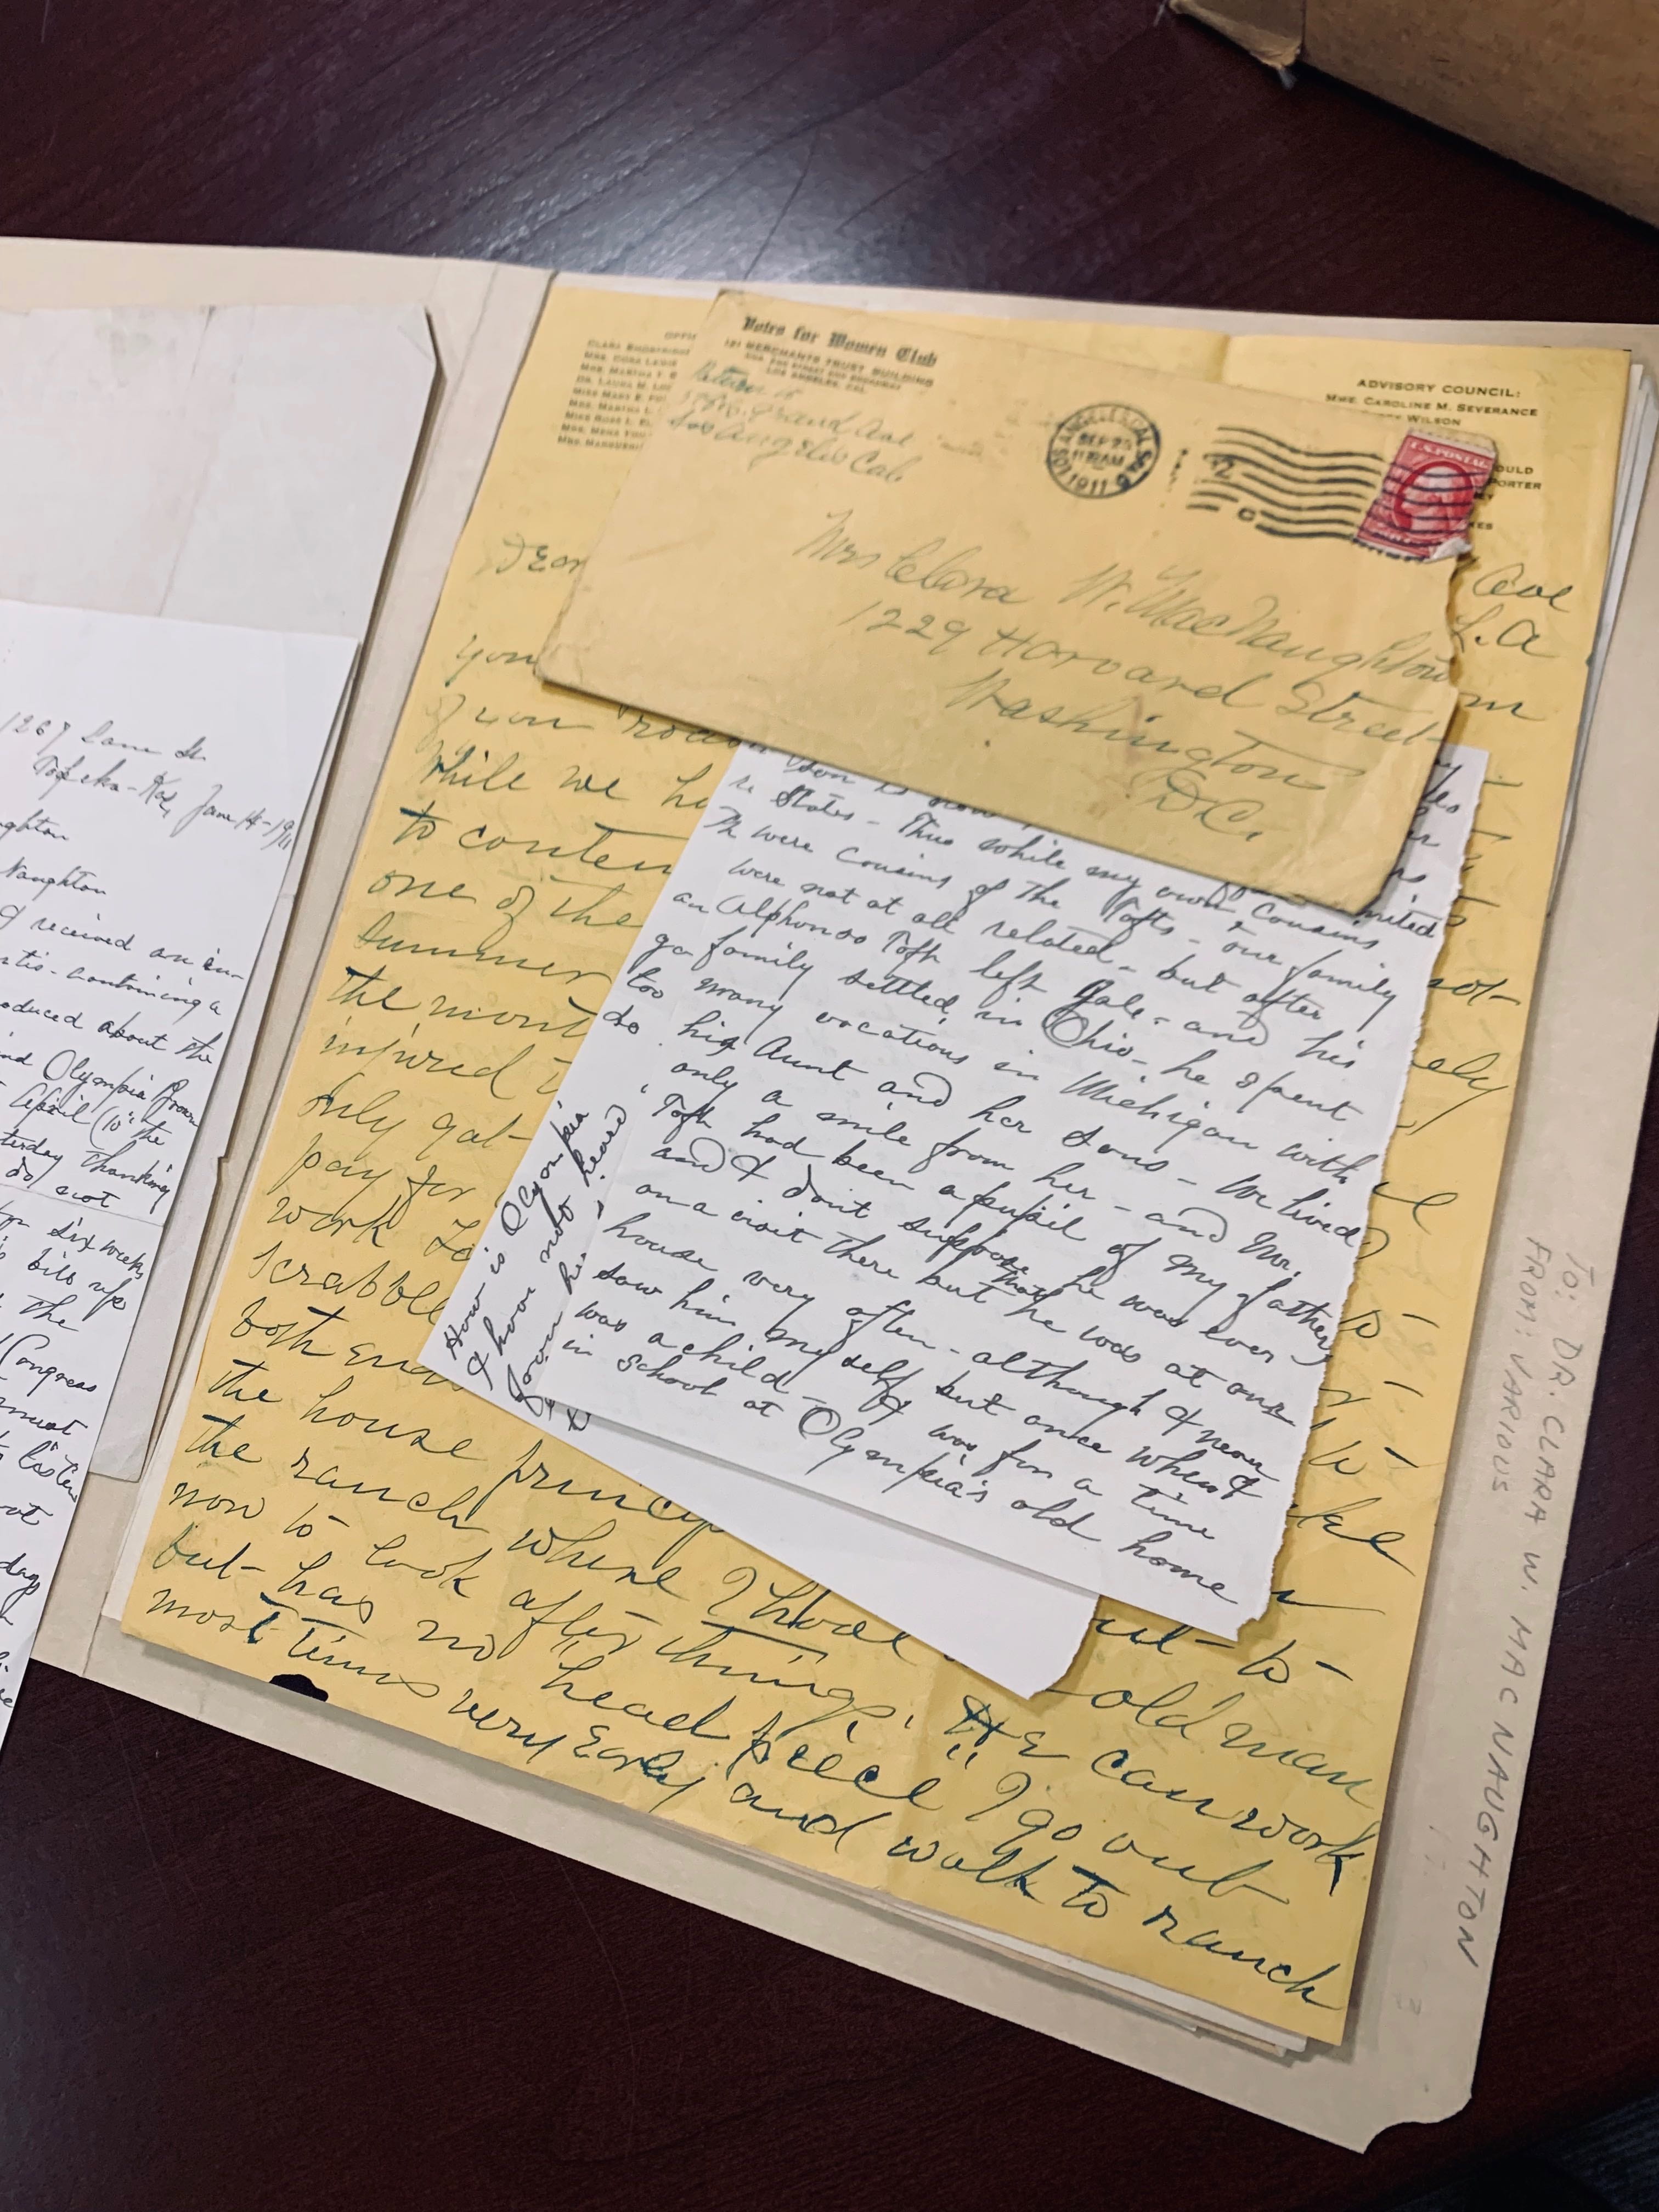 handwritten letters to Clara NacNaughton